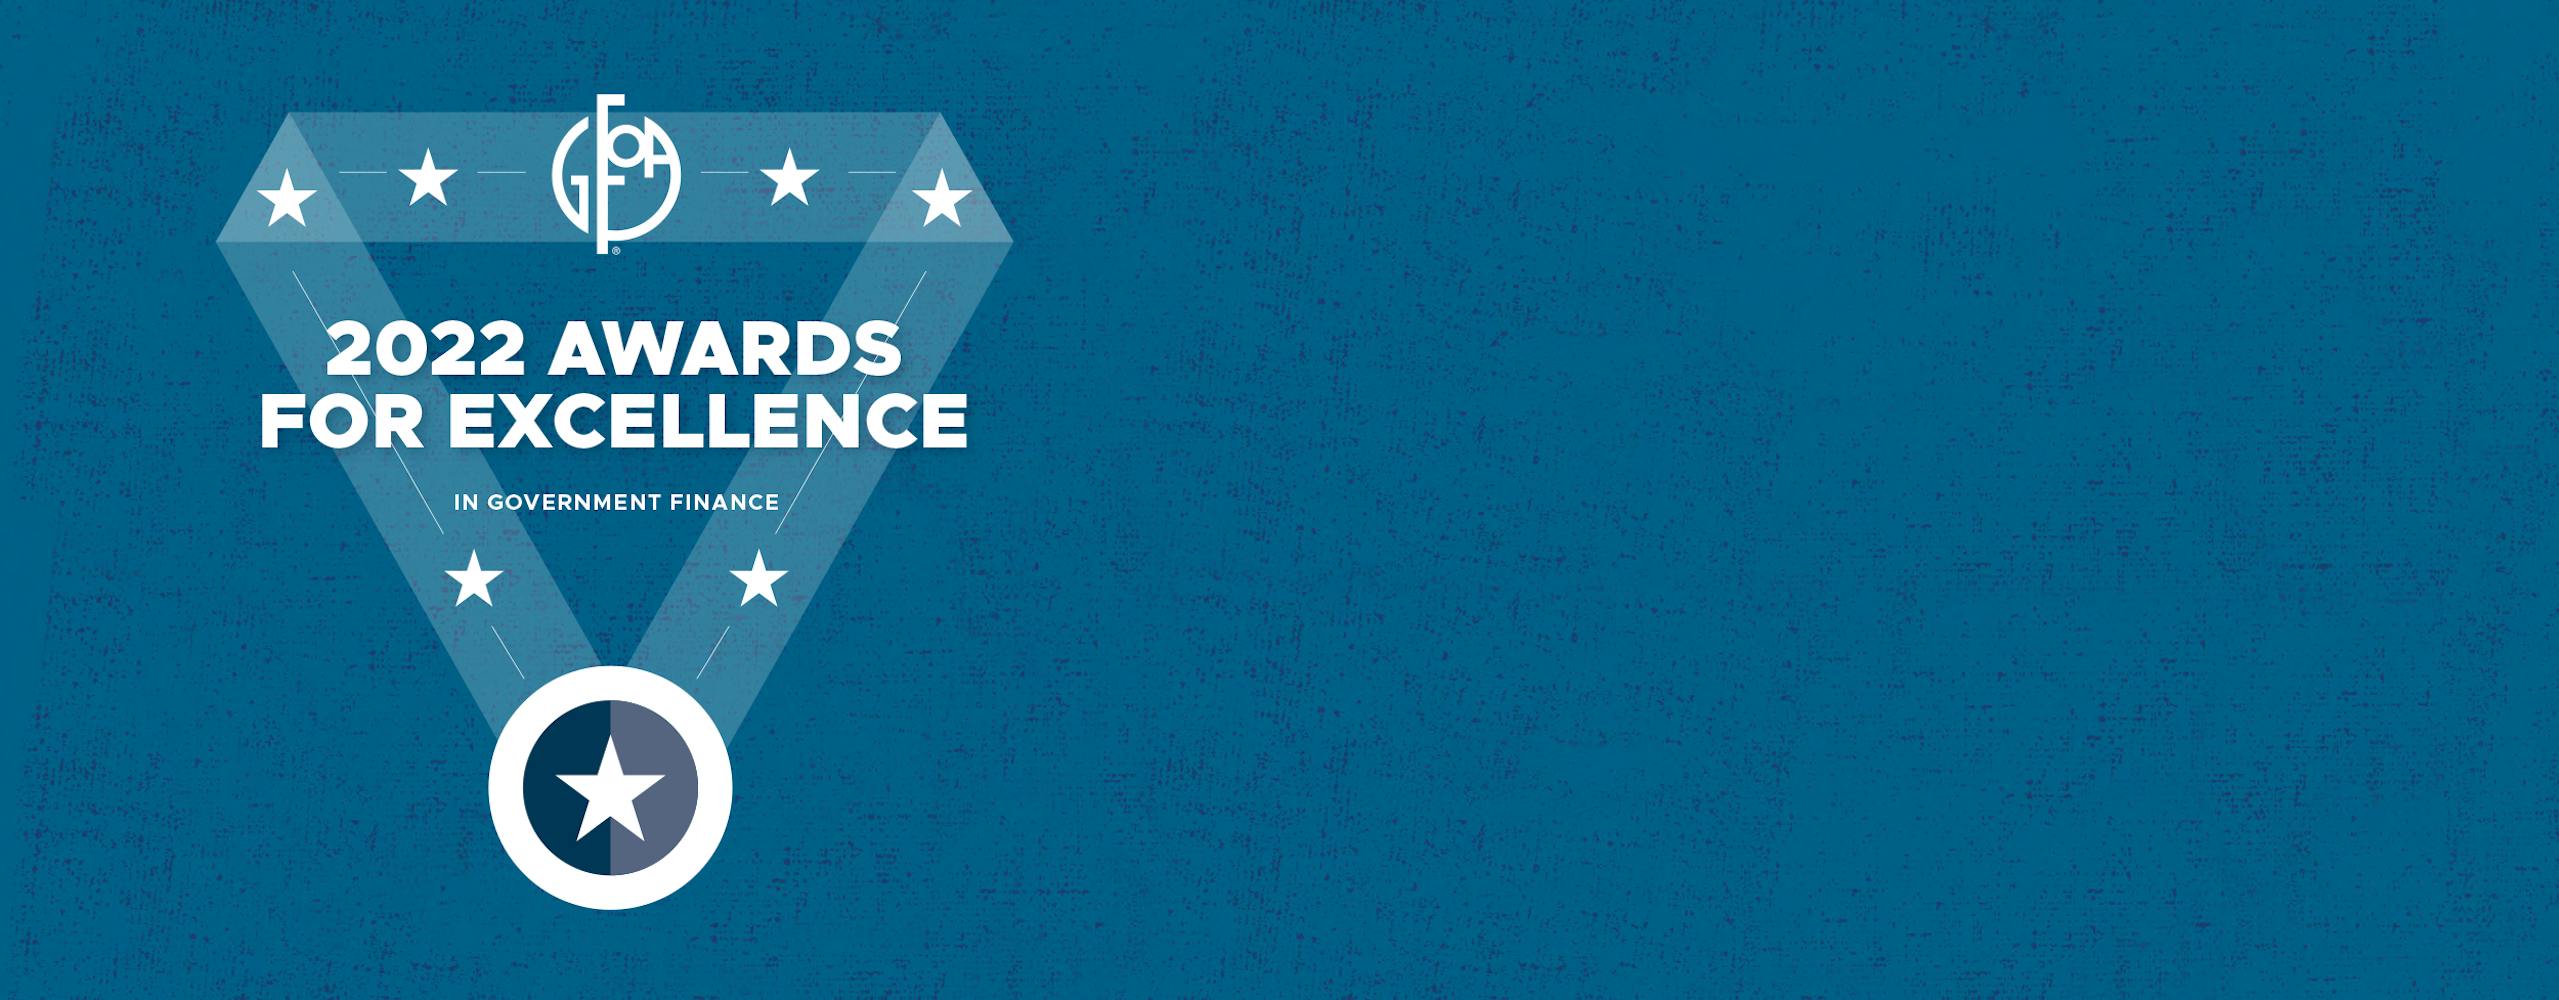 GFOA 2022 Awards for Excellence